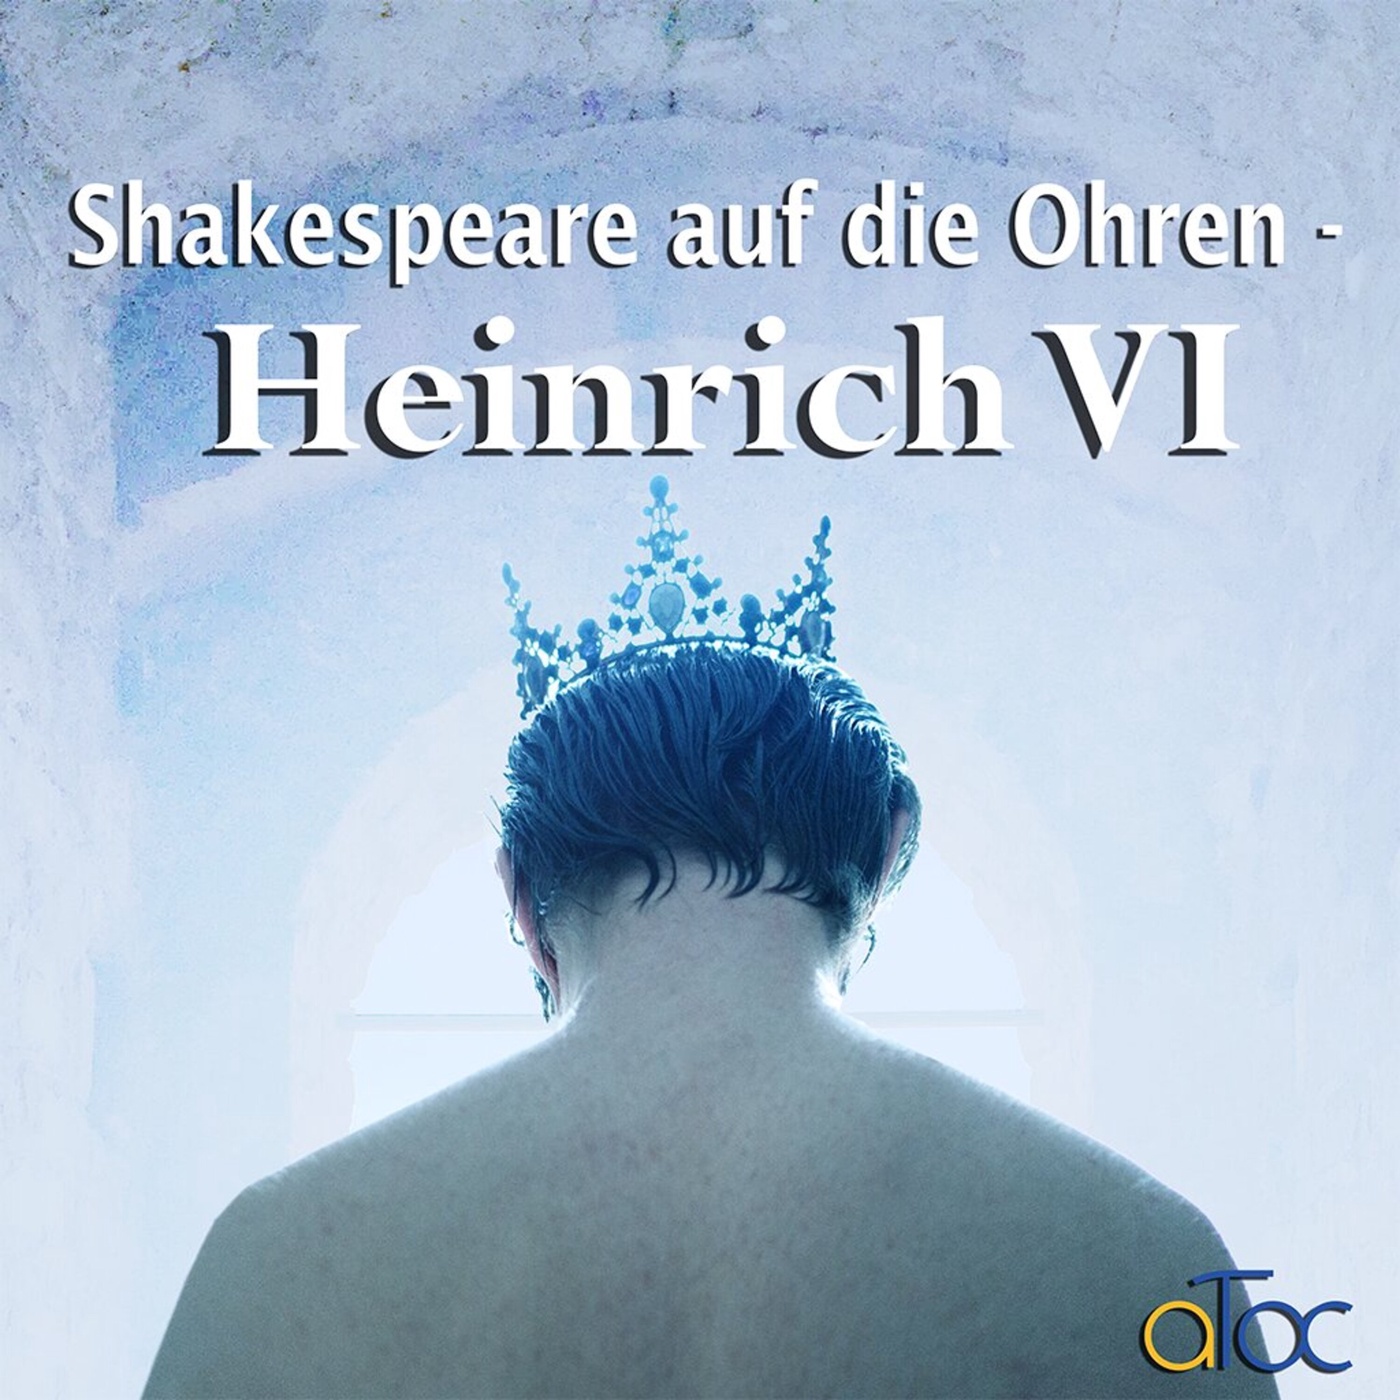 Shakespeare auf die Ohren - Heinrich VI